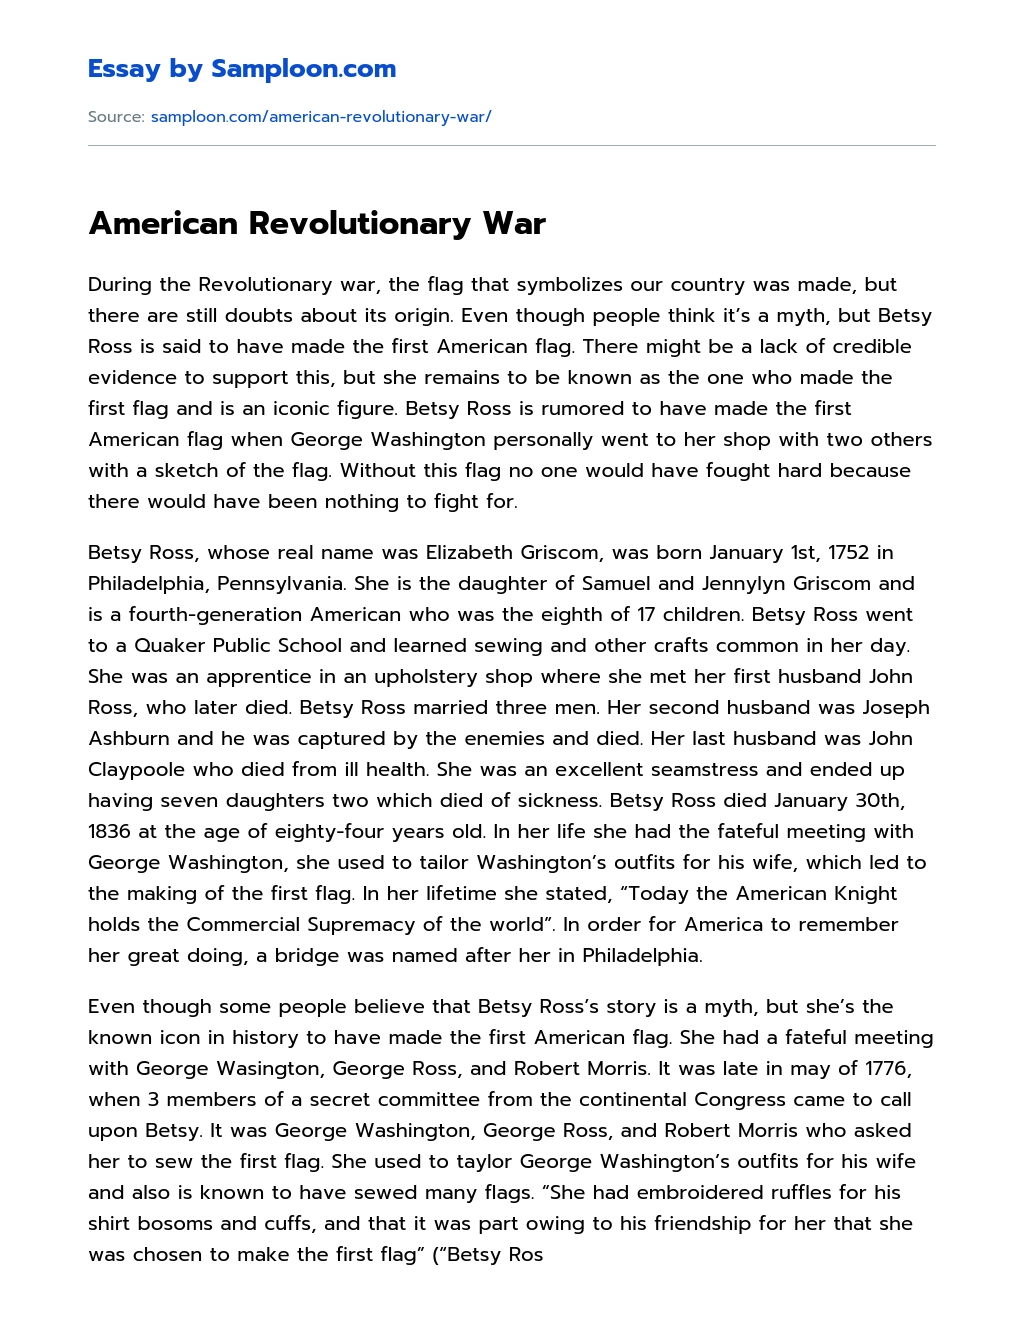 American Revolutionary War essay